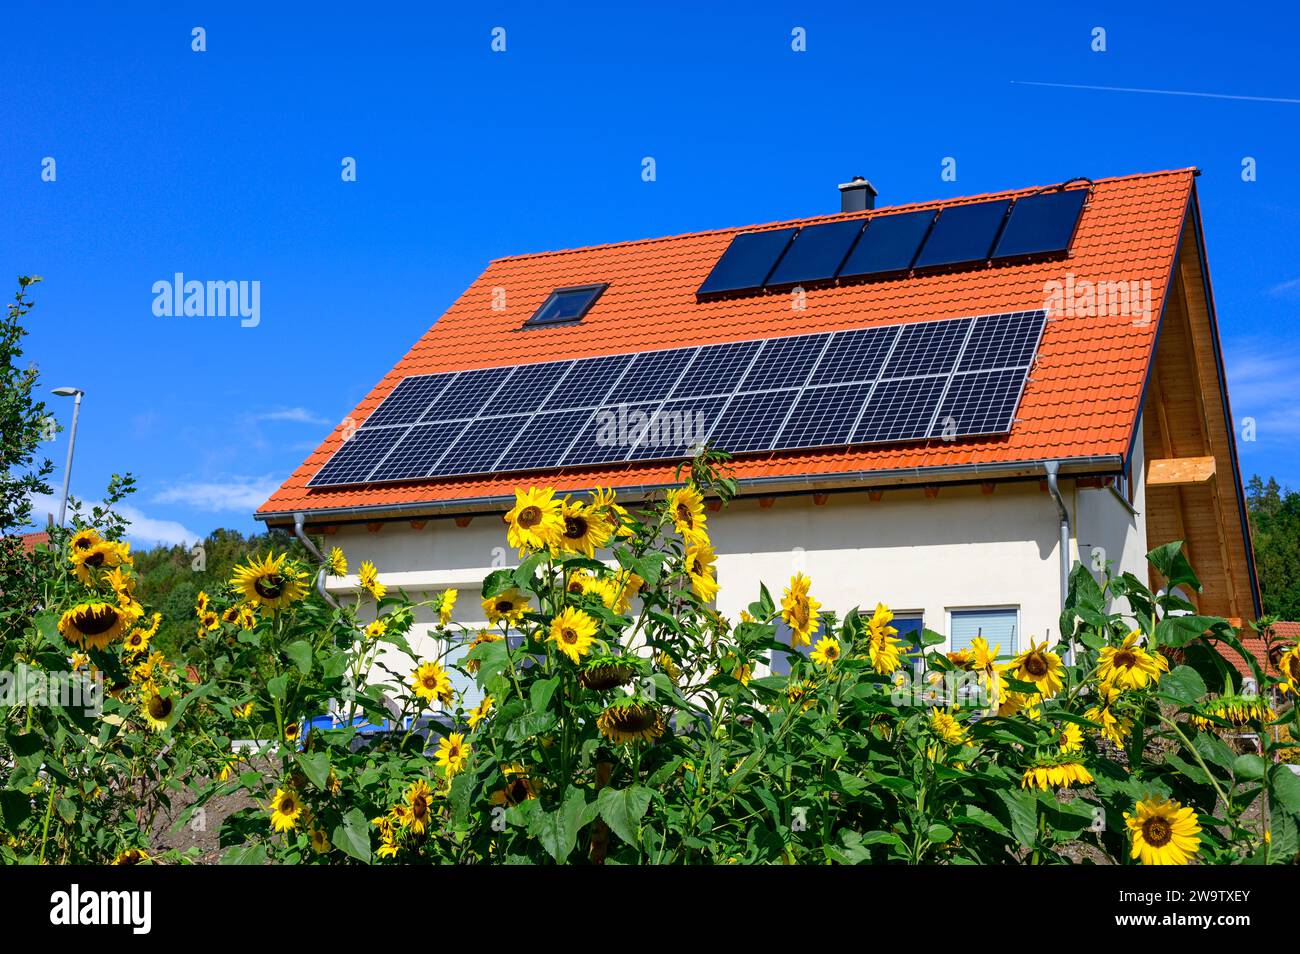 Toit solaire moderne sur une maison individuelle nouvellement construite contre un ciel bleu avec des tournesols au premier plan Banque D'Images